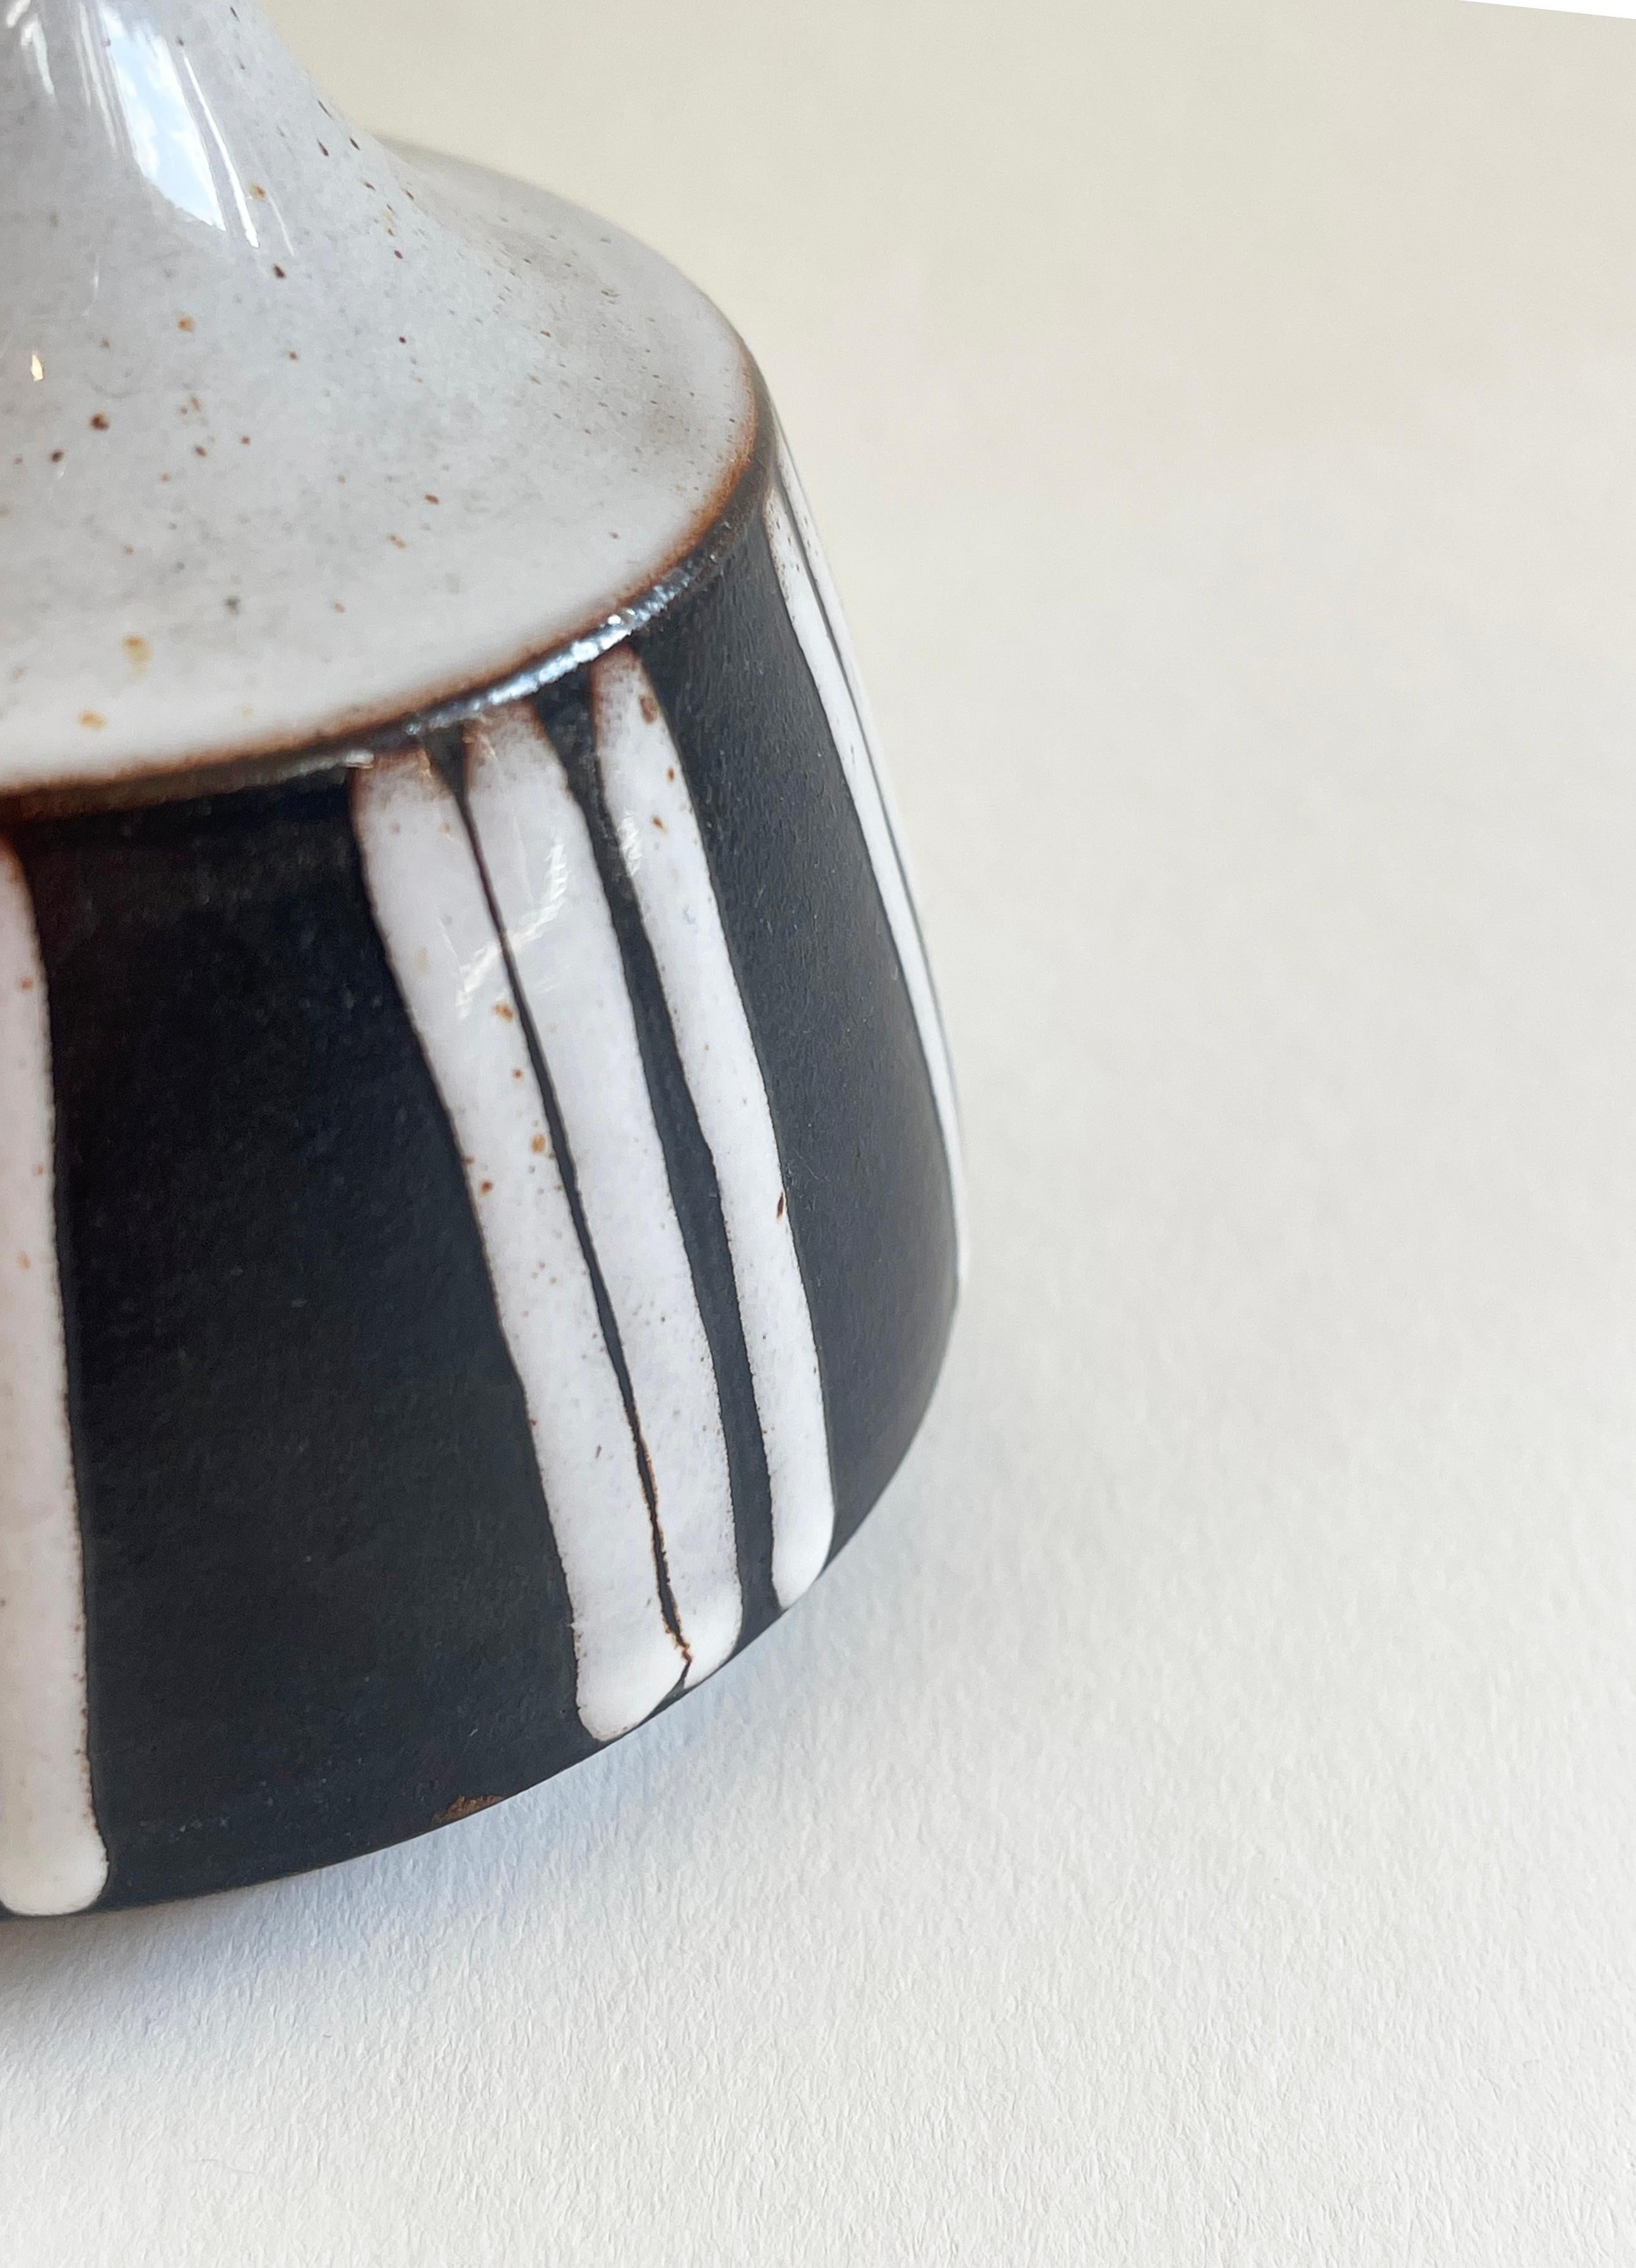 Diese kleine Vase aus deutscher Studio-Keramik strahlt eine schöne ethnische Atmosphäre aus.
Diese um 1970 hergestellte Vase ist ein Unikat und von BS Goslar signiert.
Die beigen Flächen einschließlich der Streifen sind glänzend und leicht